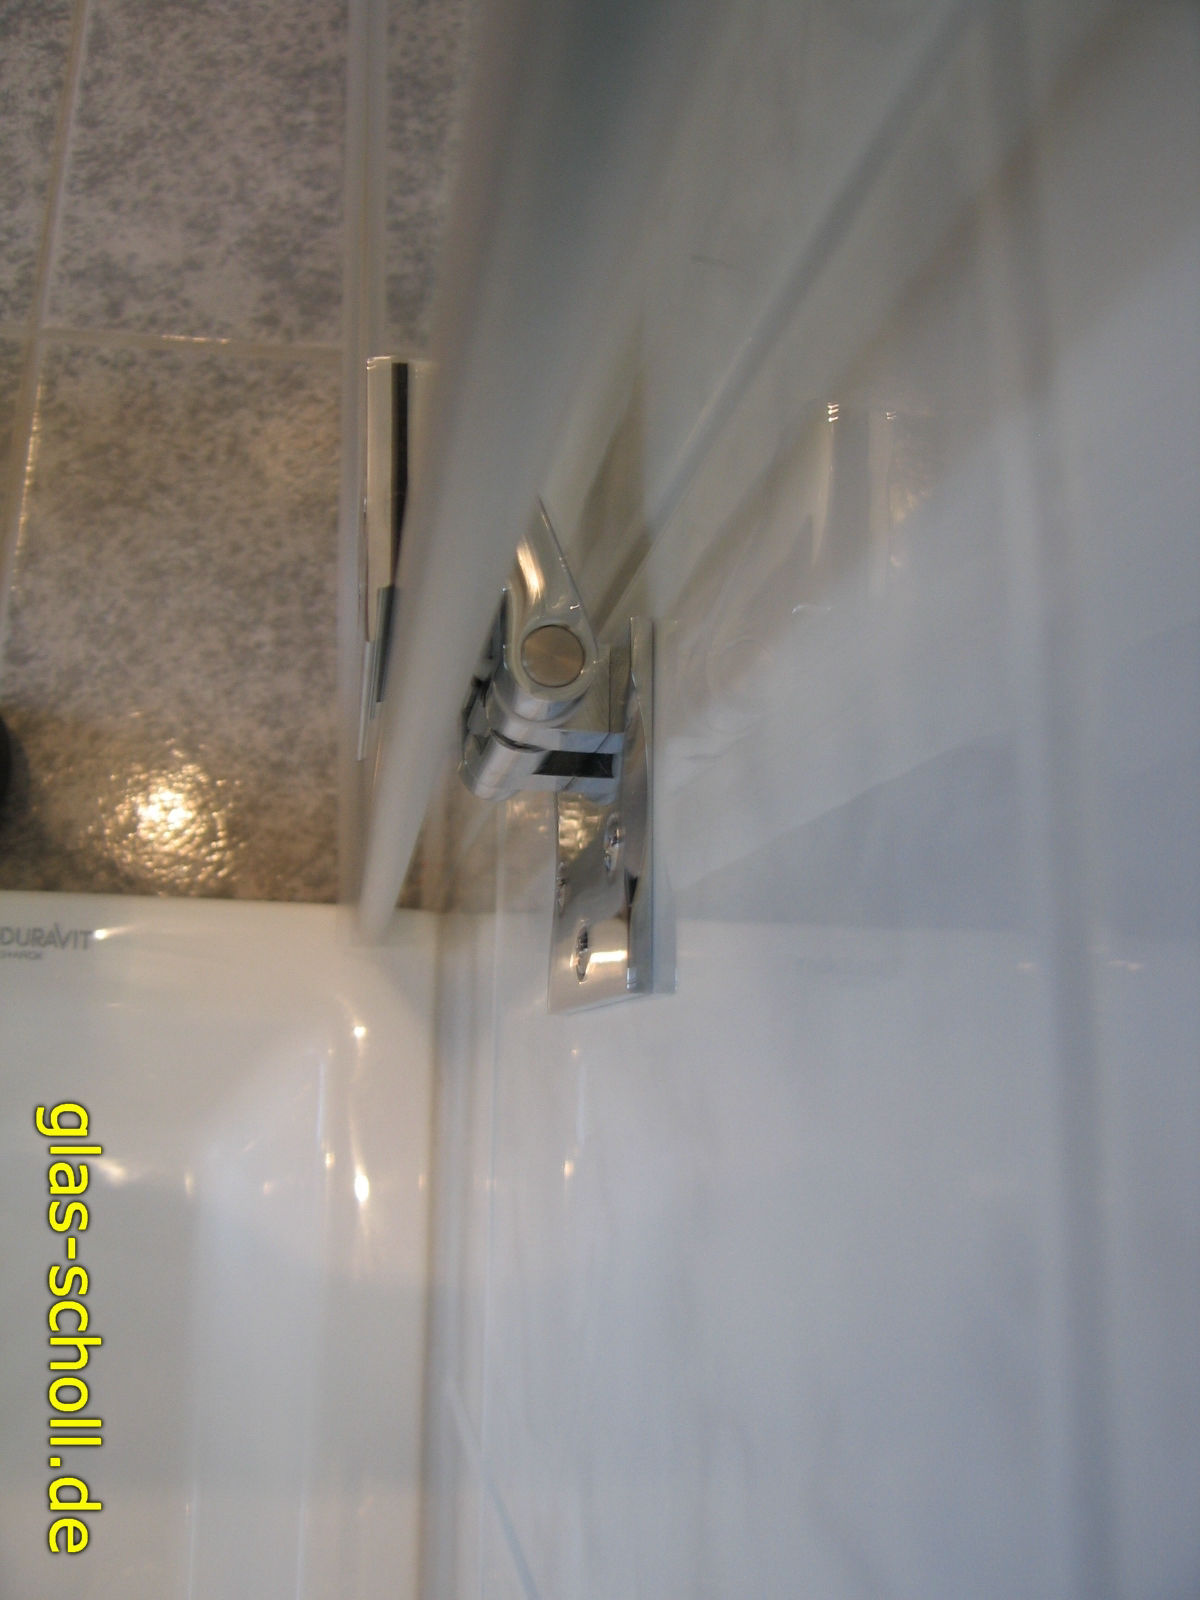 Ganzglas-Dusche neben Badwanne - Referenz aus 2007 von Glas Scholl